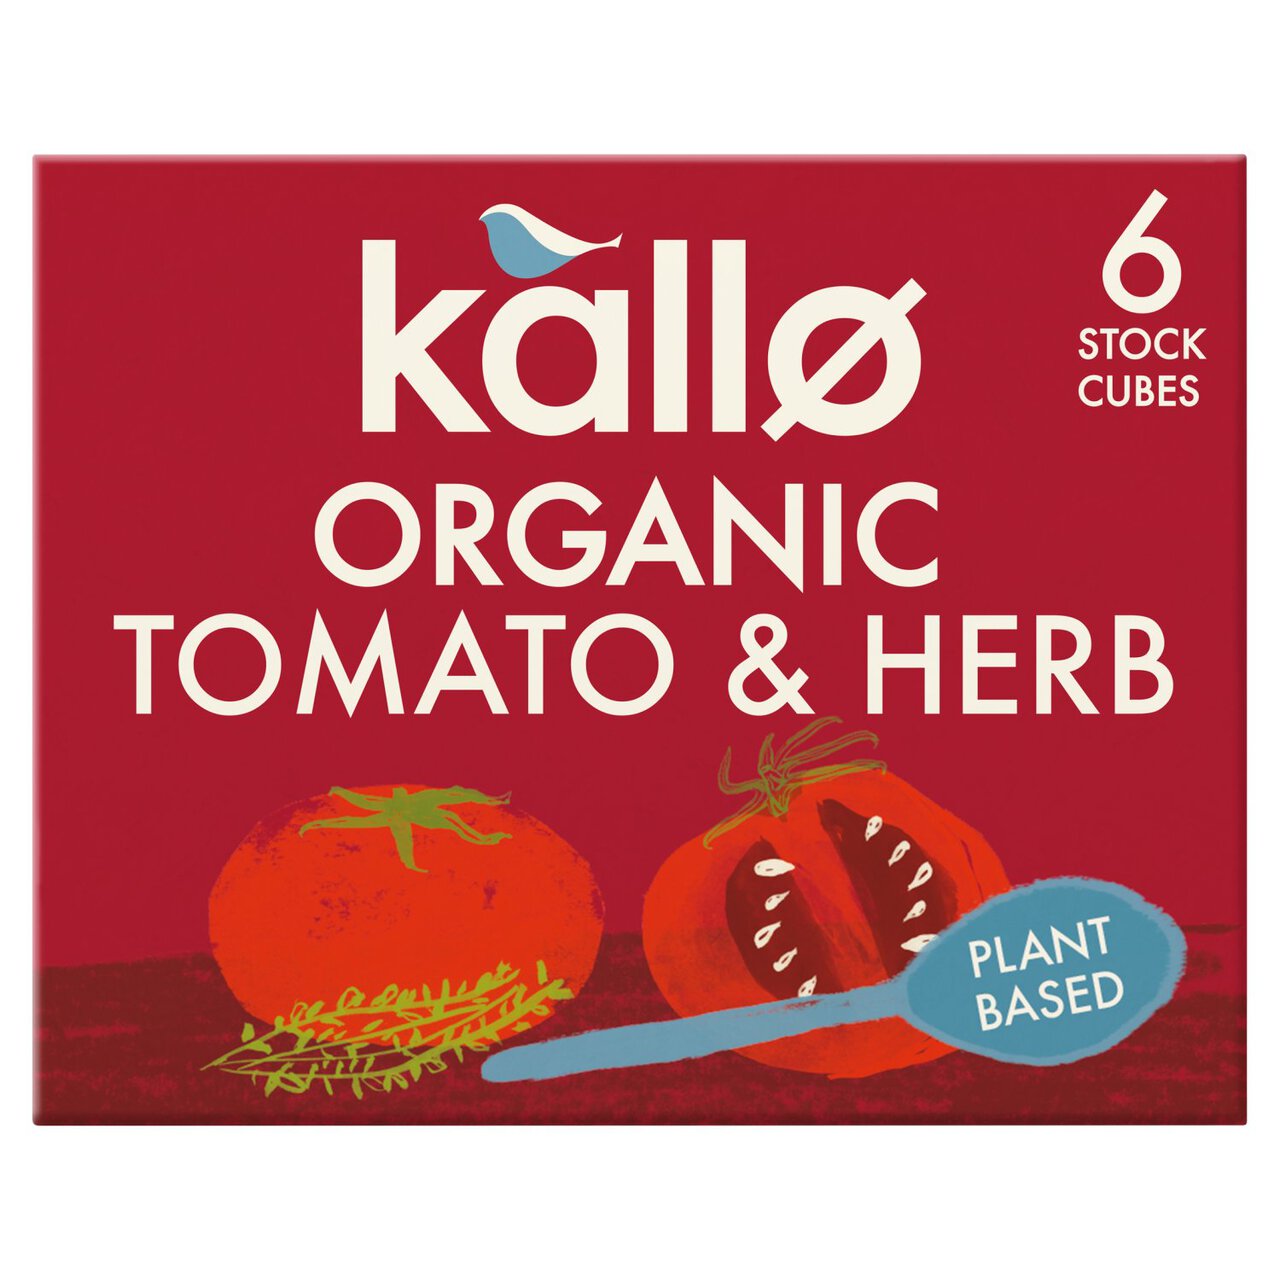 Kallo Organic Tomato & Herb Stock Cubes 6 x 11g